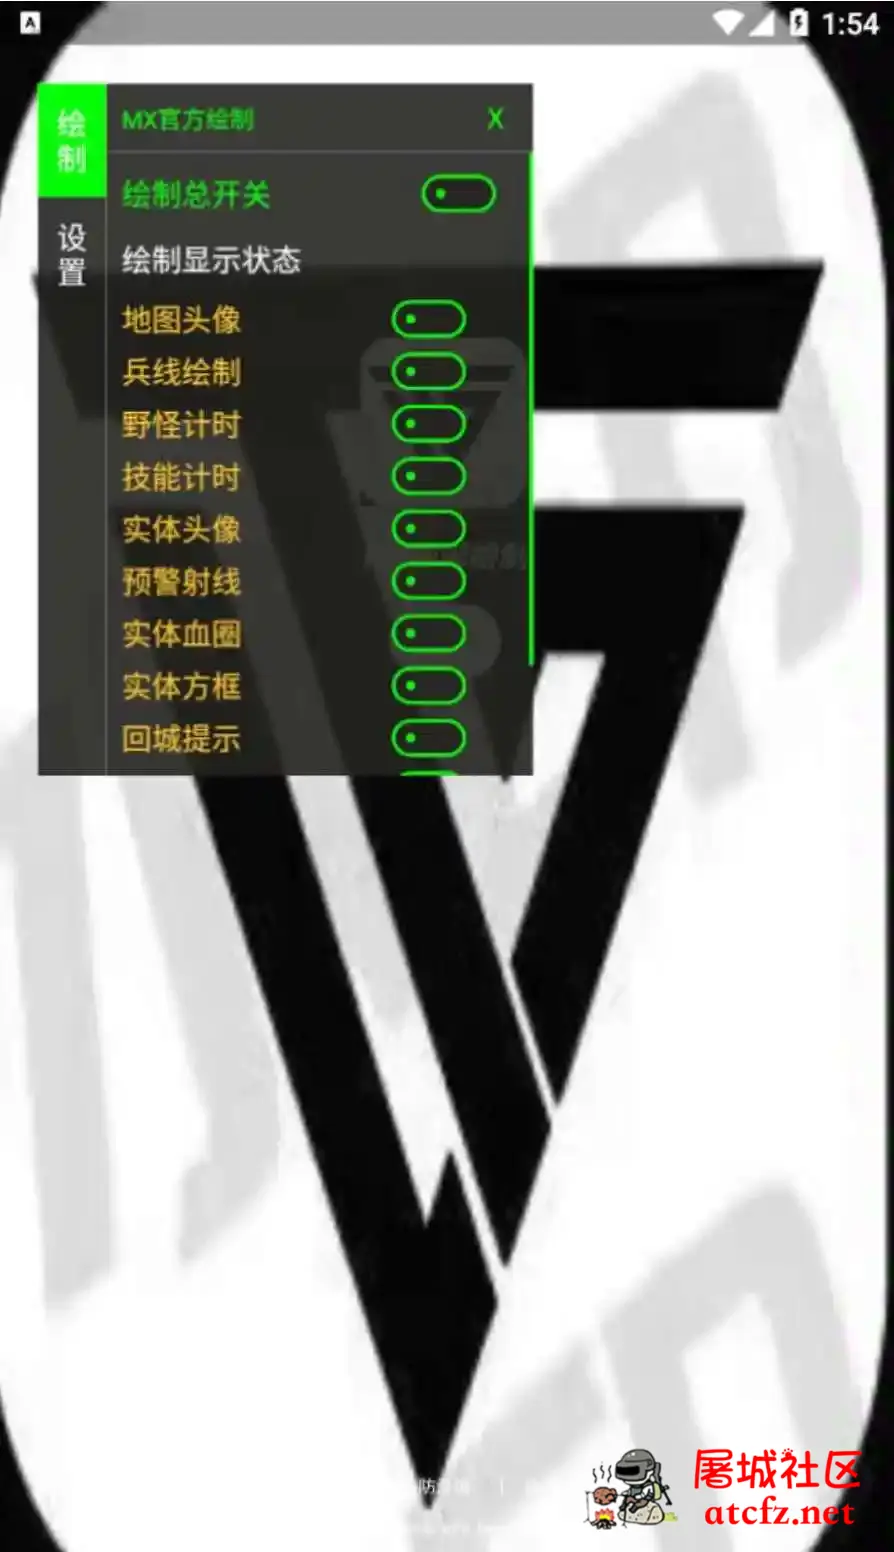 王者荣耀MX绘制透视CD野怪计时插件破解版 屠城辅助网www.tcfz1.com369